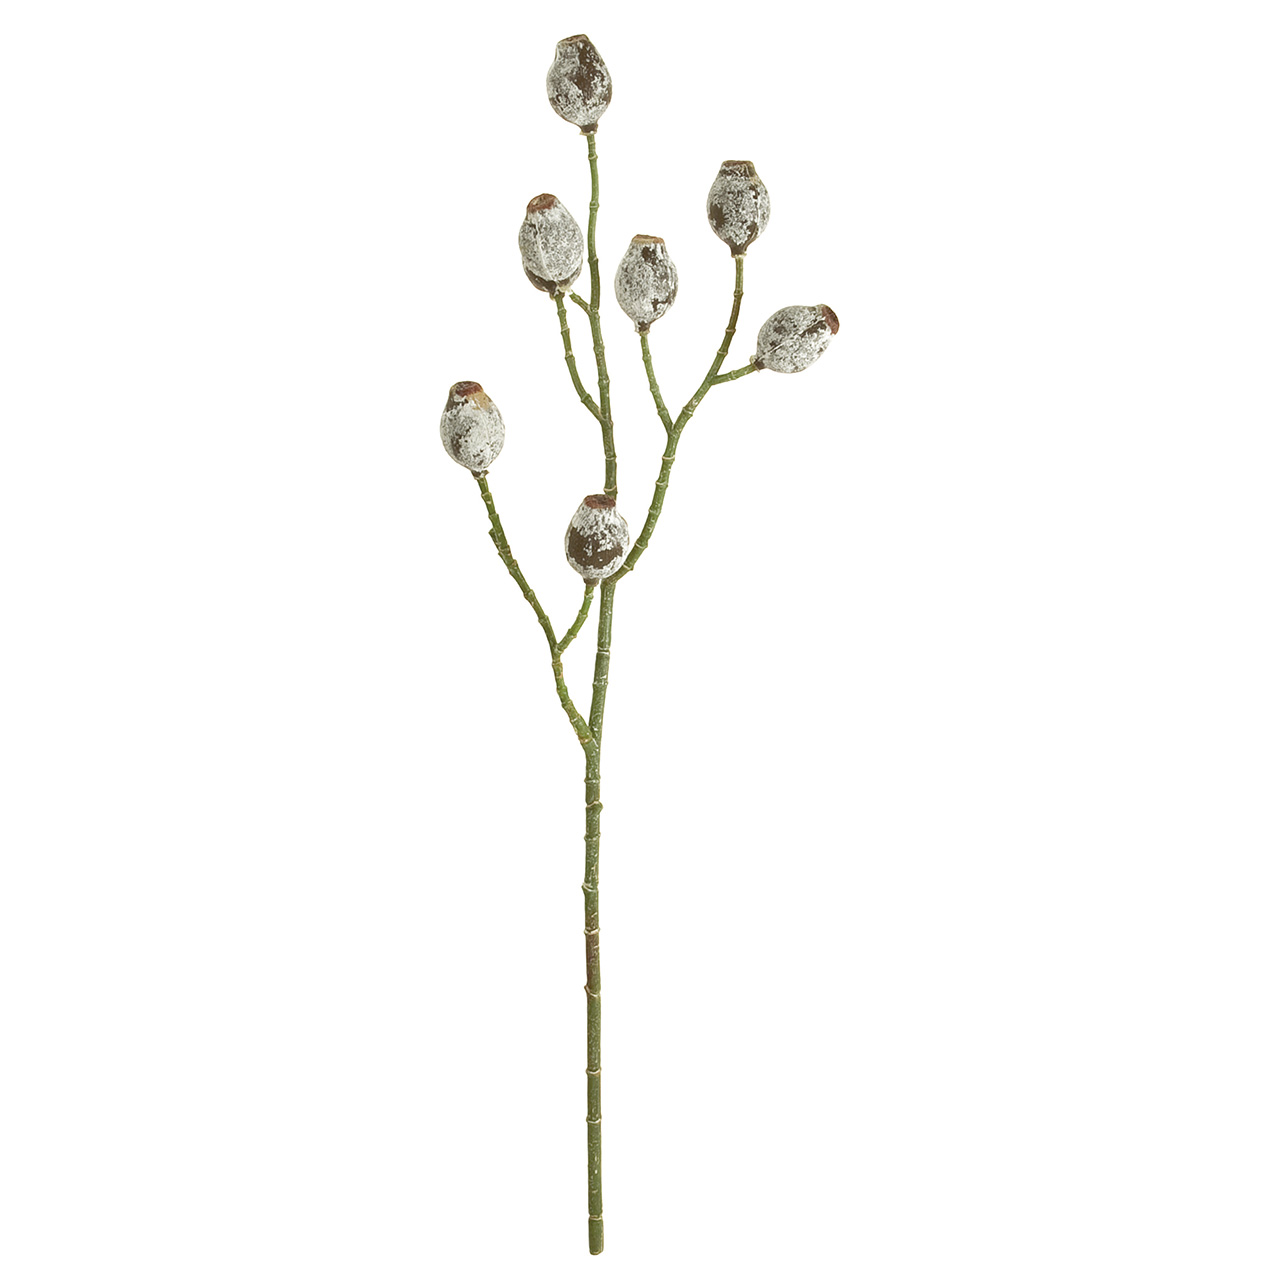 マイフラ 通販 Magiq ユーカリベルギーナッツ グレイグリーン アーティフィシャルフラワー 造花 葉物 Fg0014 実の長さ 約3 5 長さ 約50cm グレイグリーン Magiq アーティフィシャルフラワー 造花 全国にmagiq 花器 花資材などをお届けします